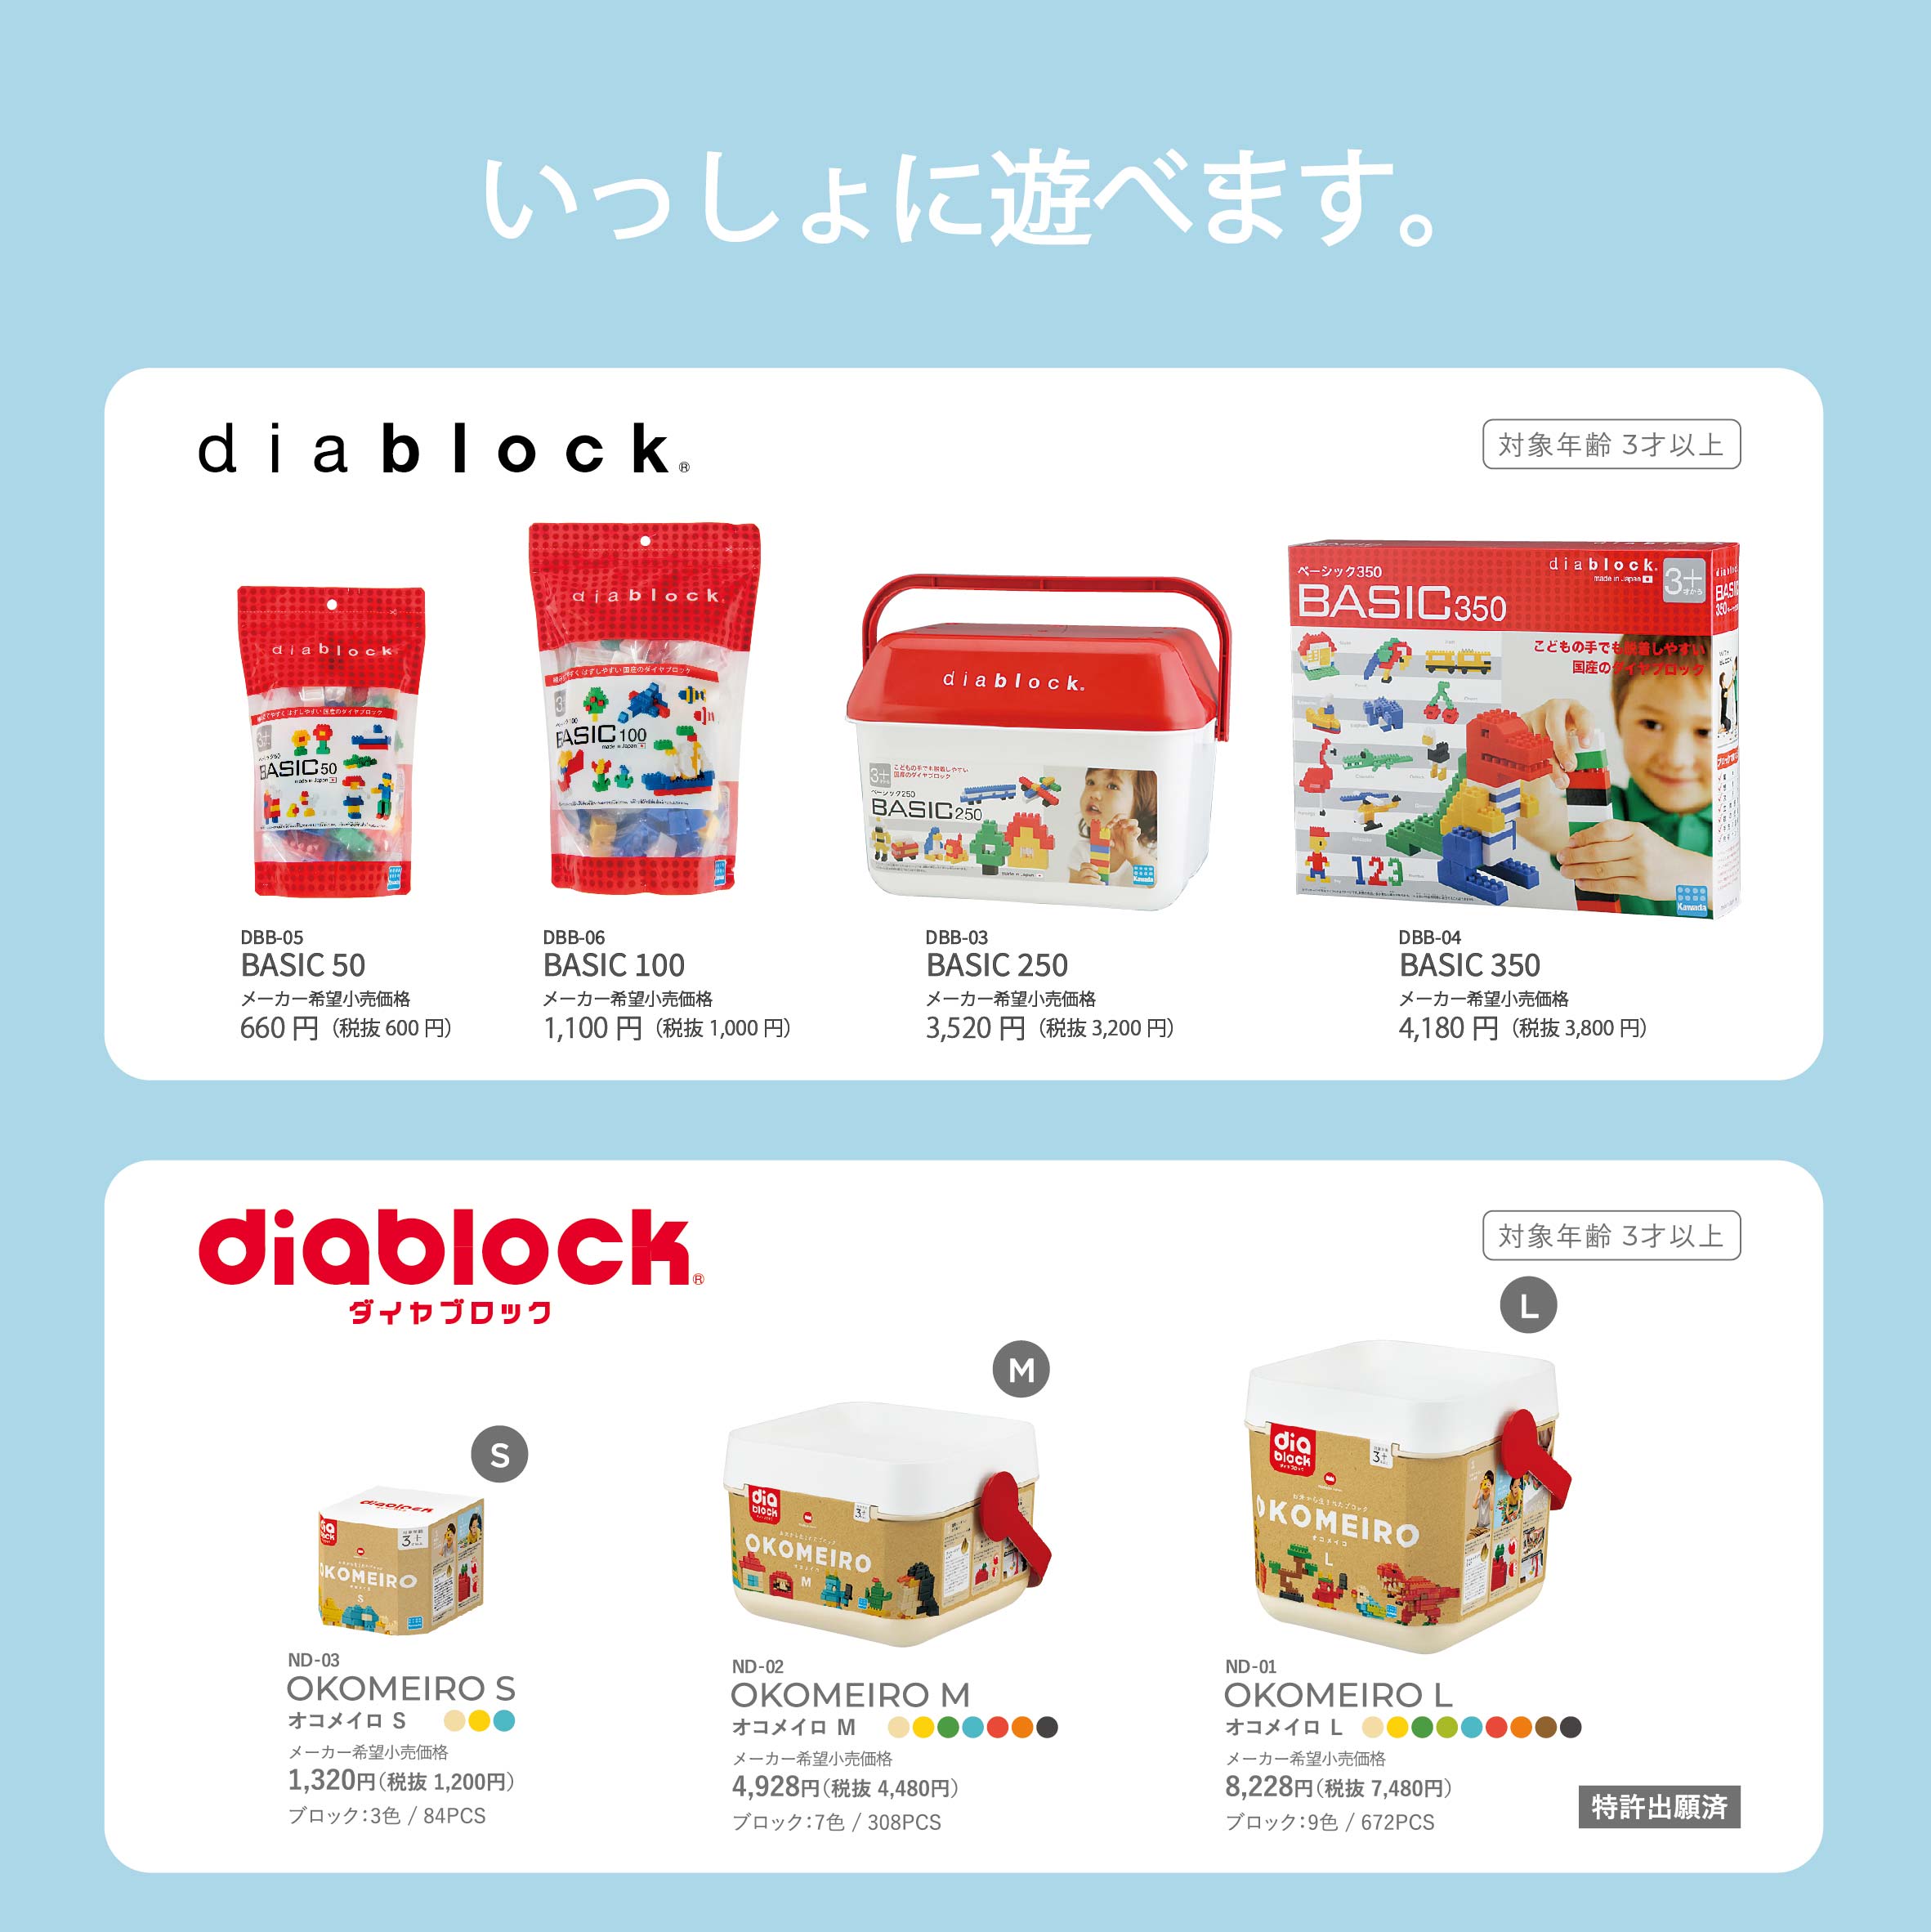 OKOMEIRO L | diablock® | Kawada Official Original Brand Site